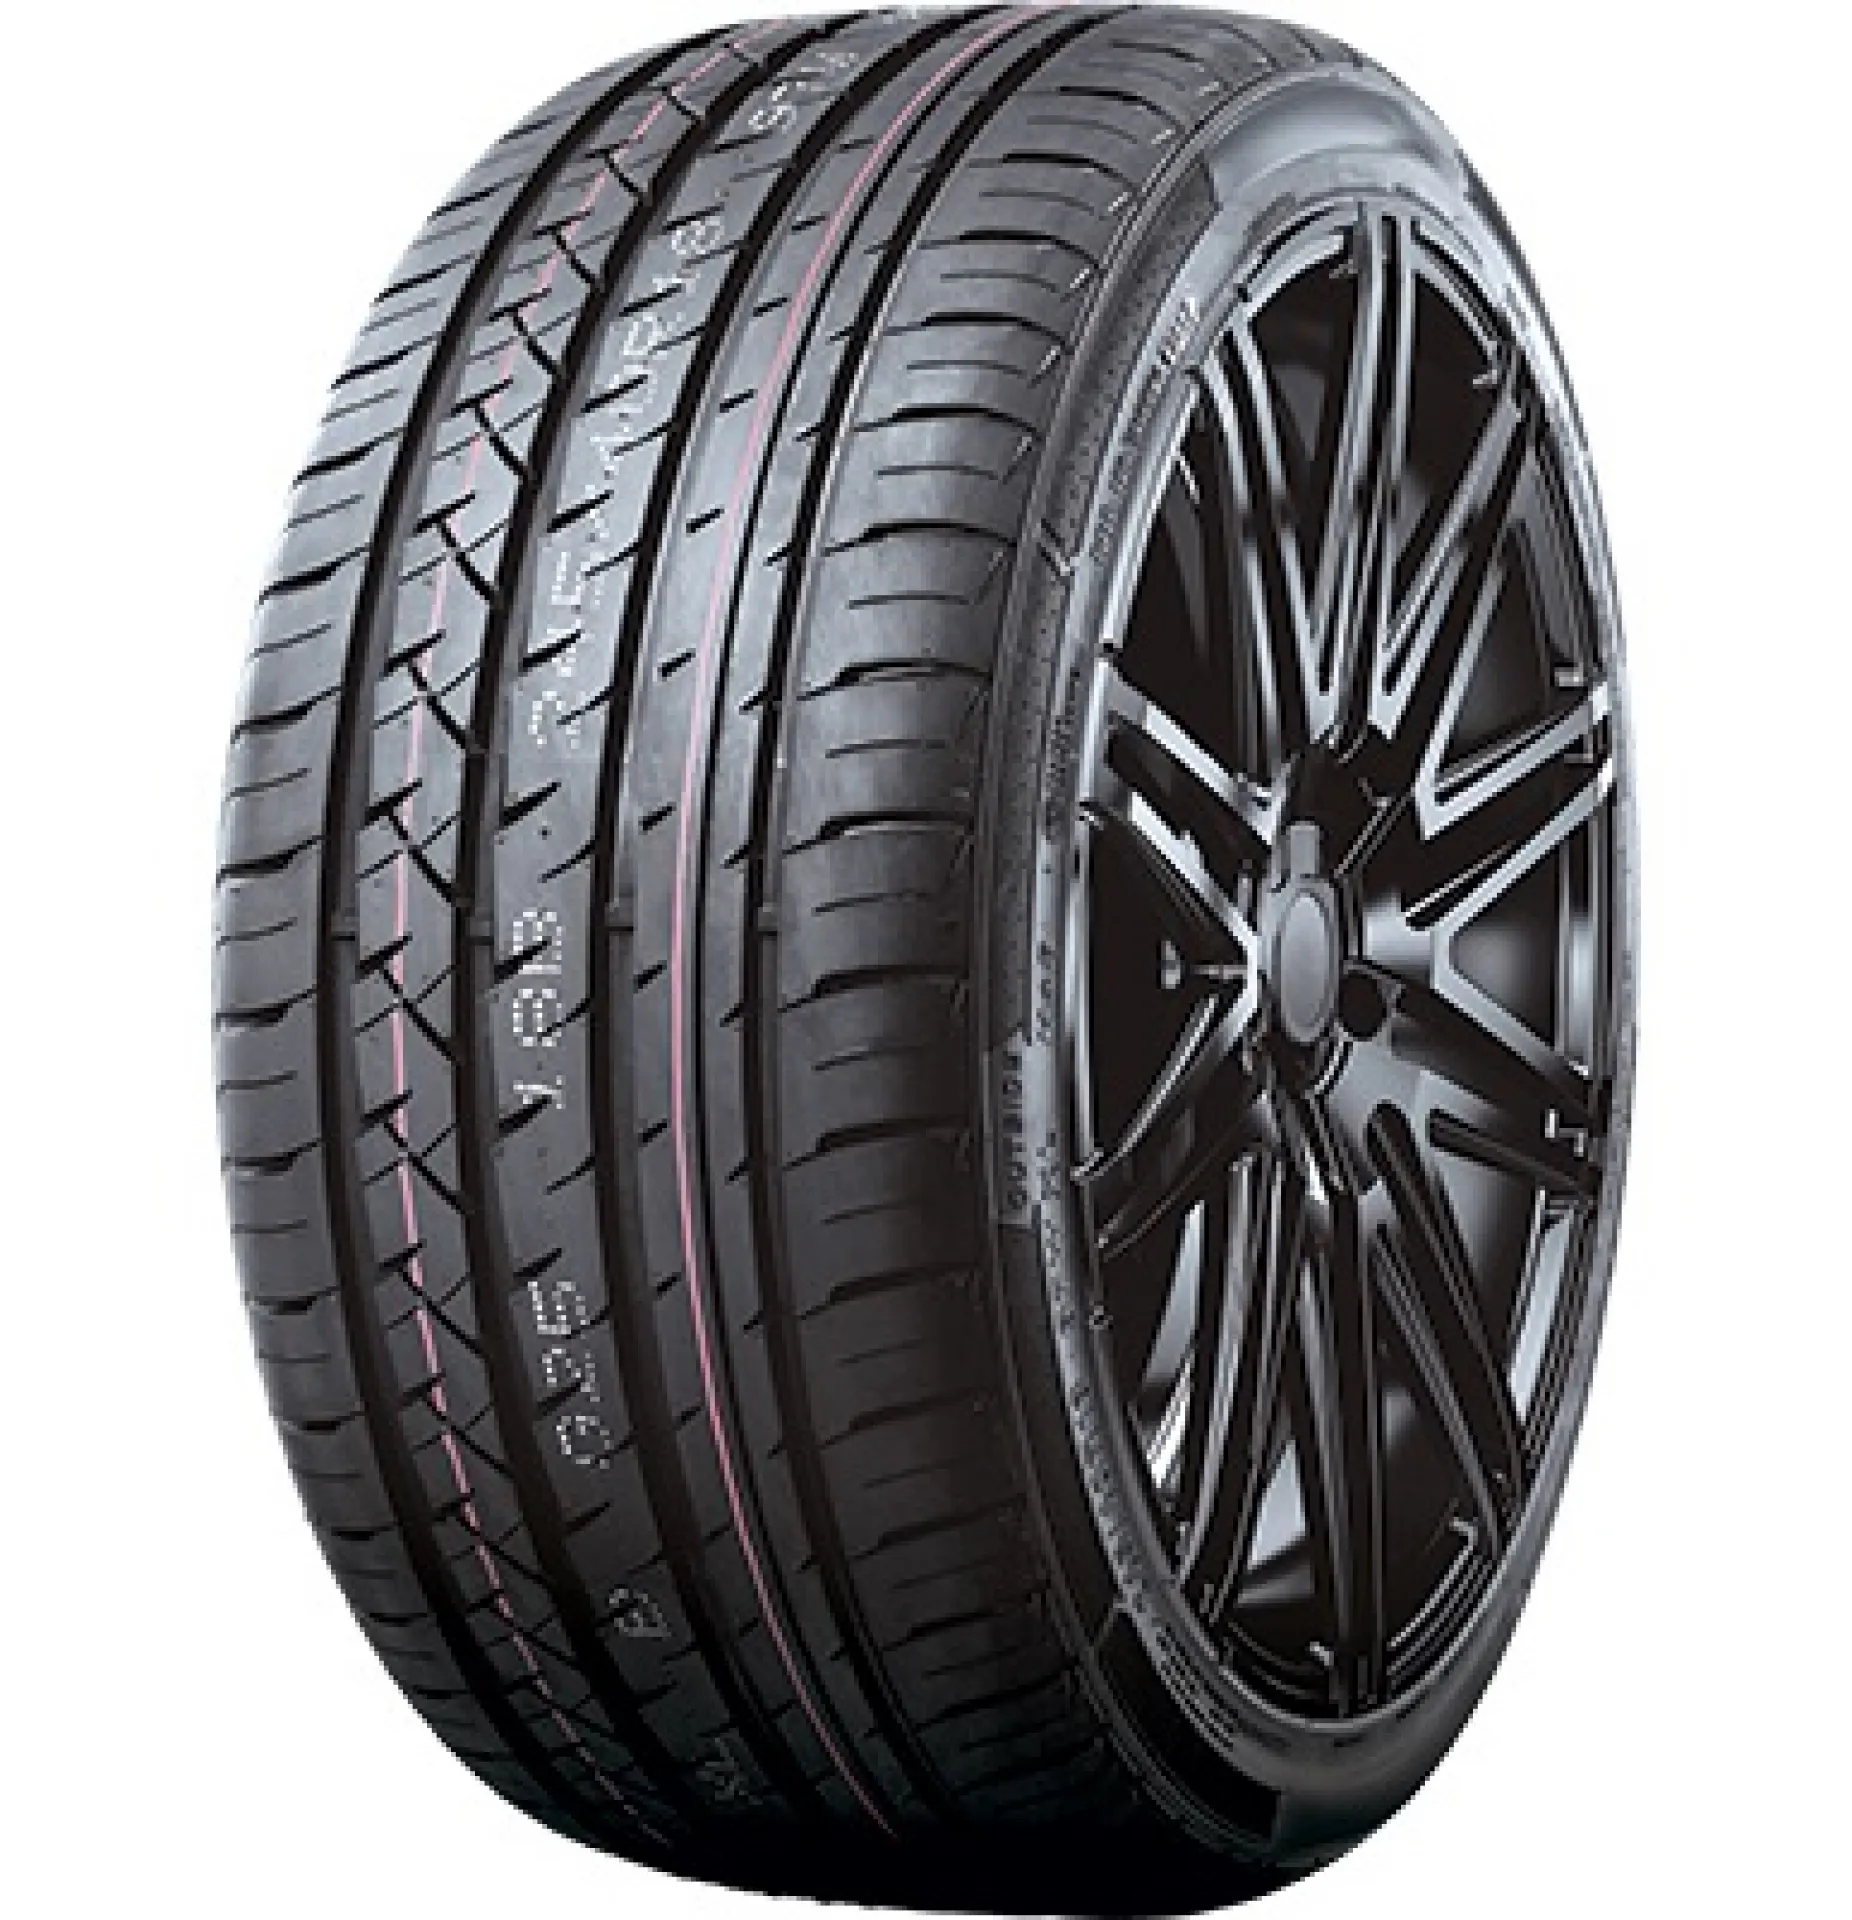 T-Tyre Four 245/45R18 100W XL